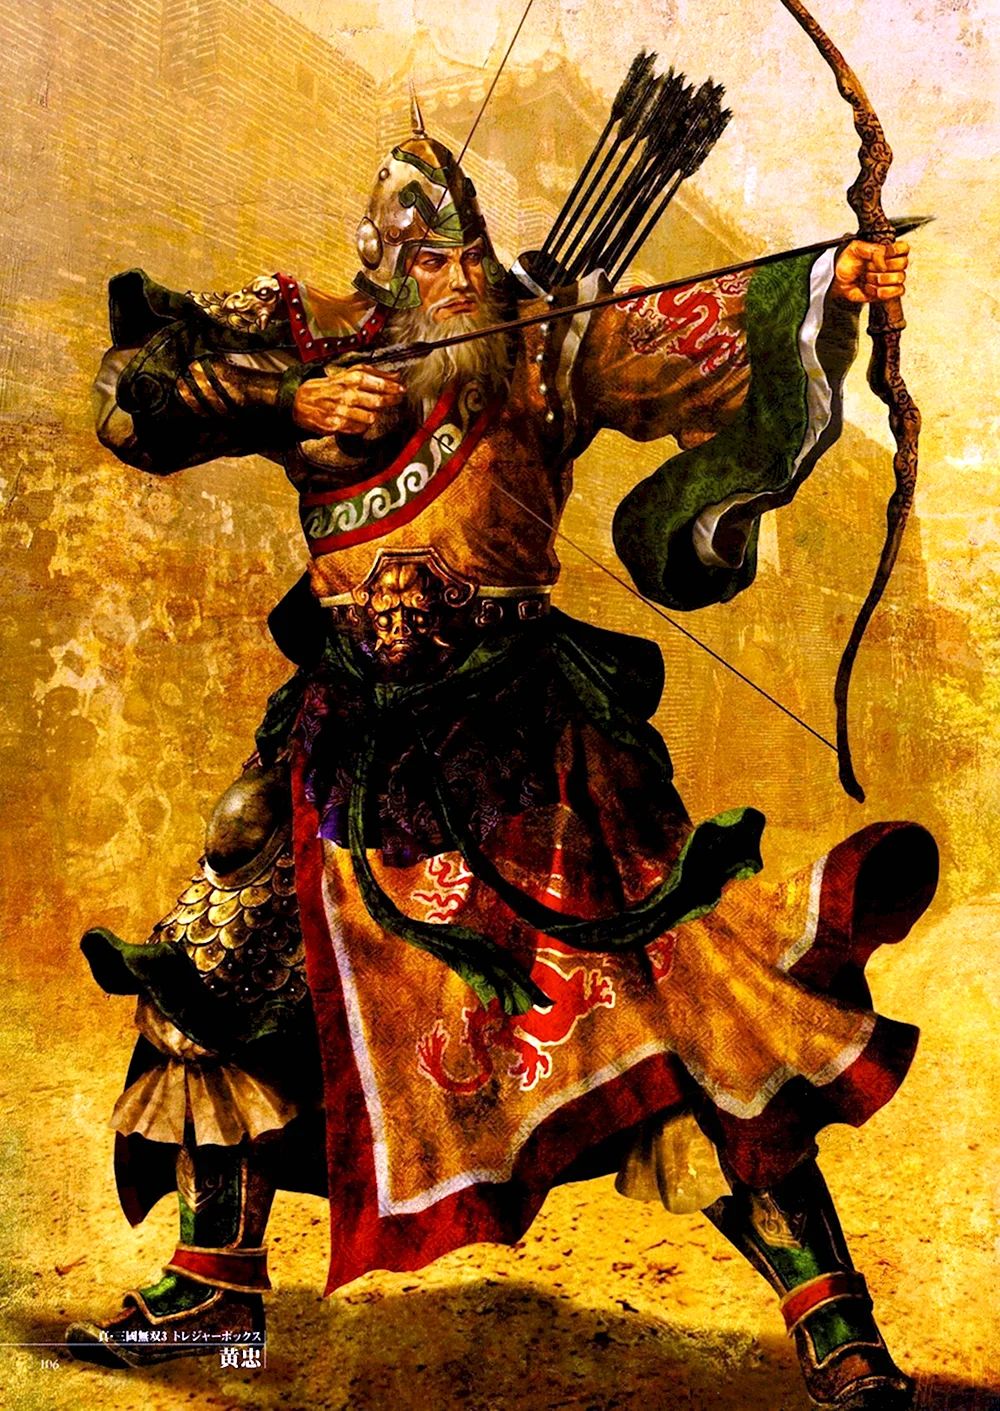 Китайские воины и Самураи